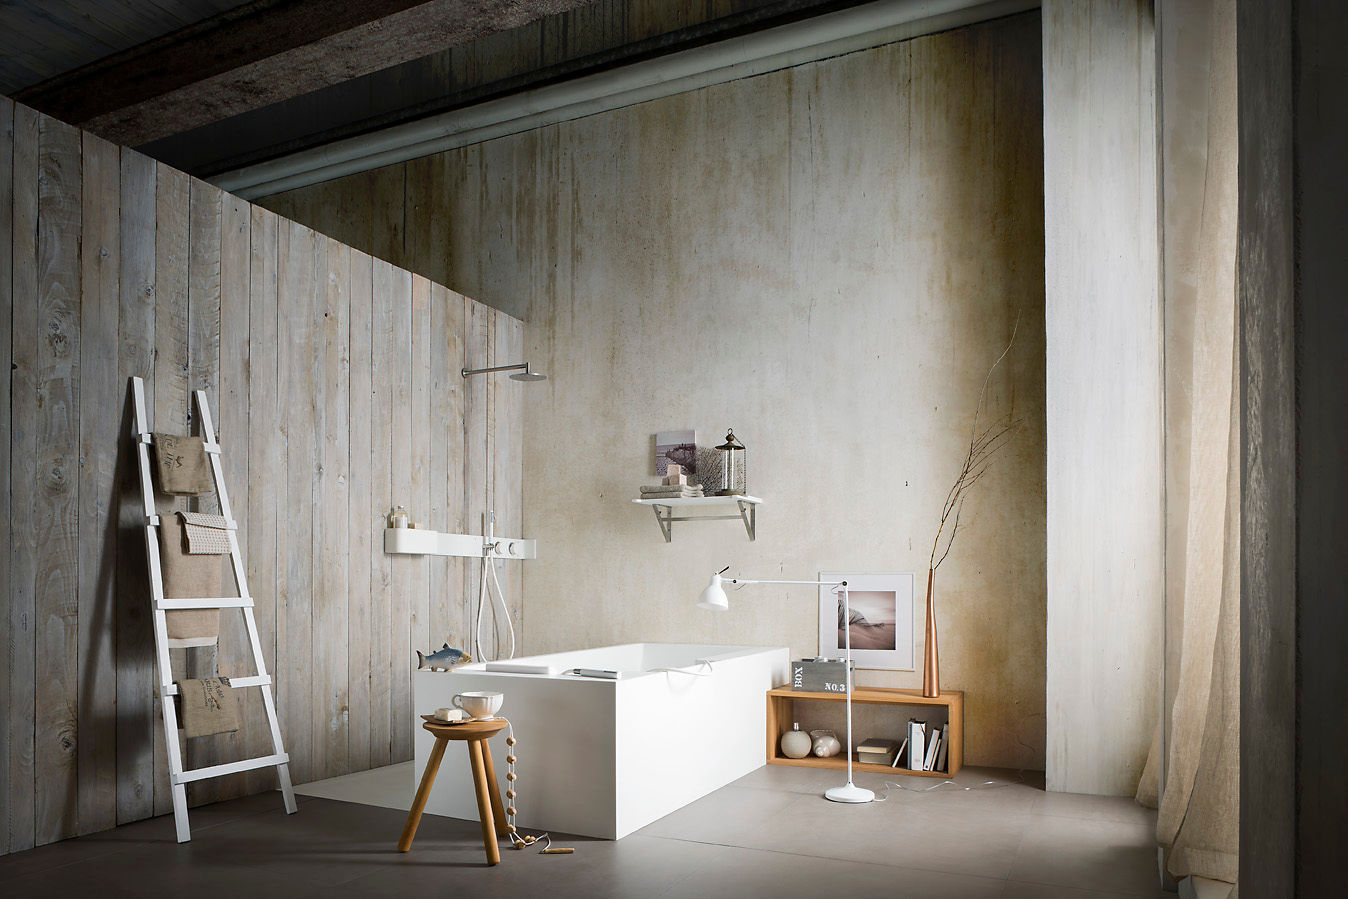 ERGO_NOMIC, Giulio Gianturco Giulio Gianturco Baños de estilo minimalista Compuestos de madera y plástico Bañeras y duchas